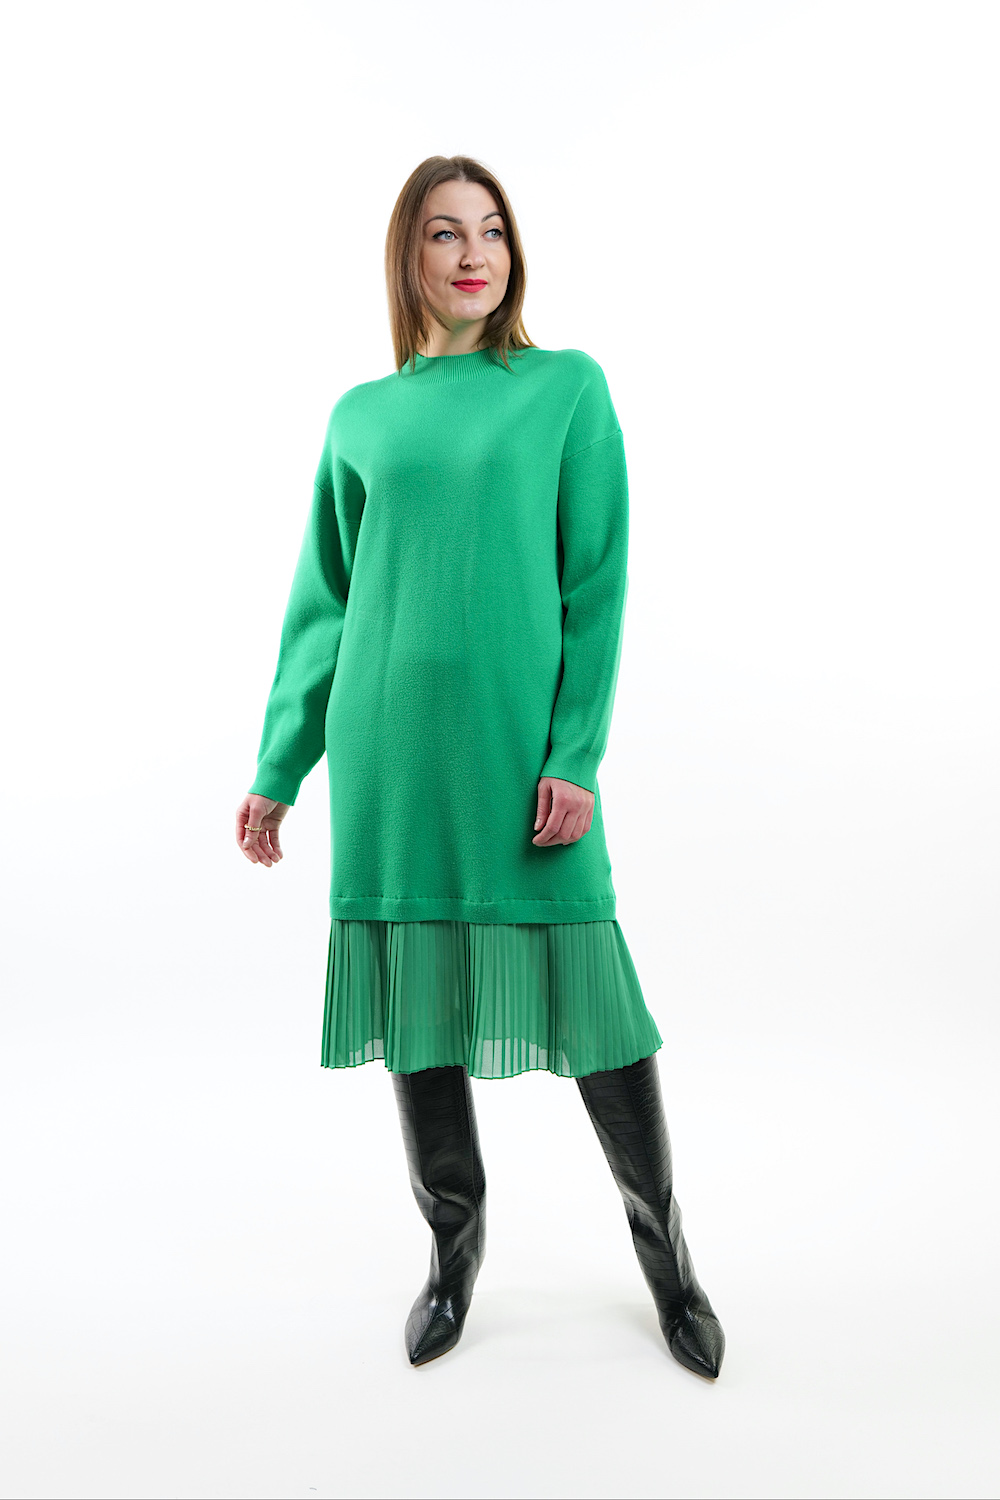 Зелена сукня довжини міді з фатіновою вставкою італійського бренду No-Na